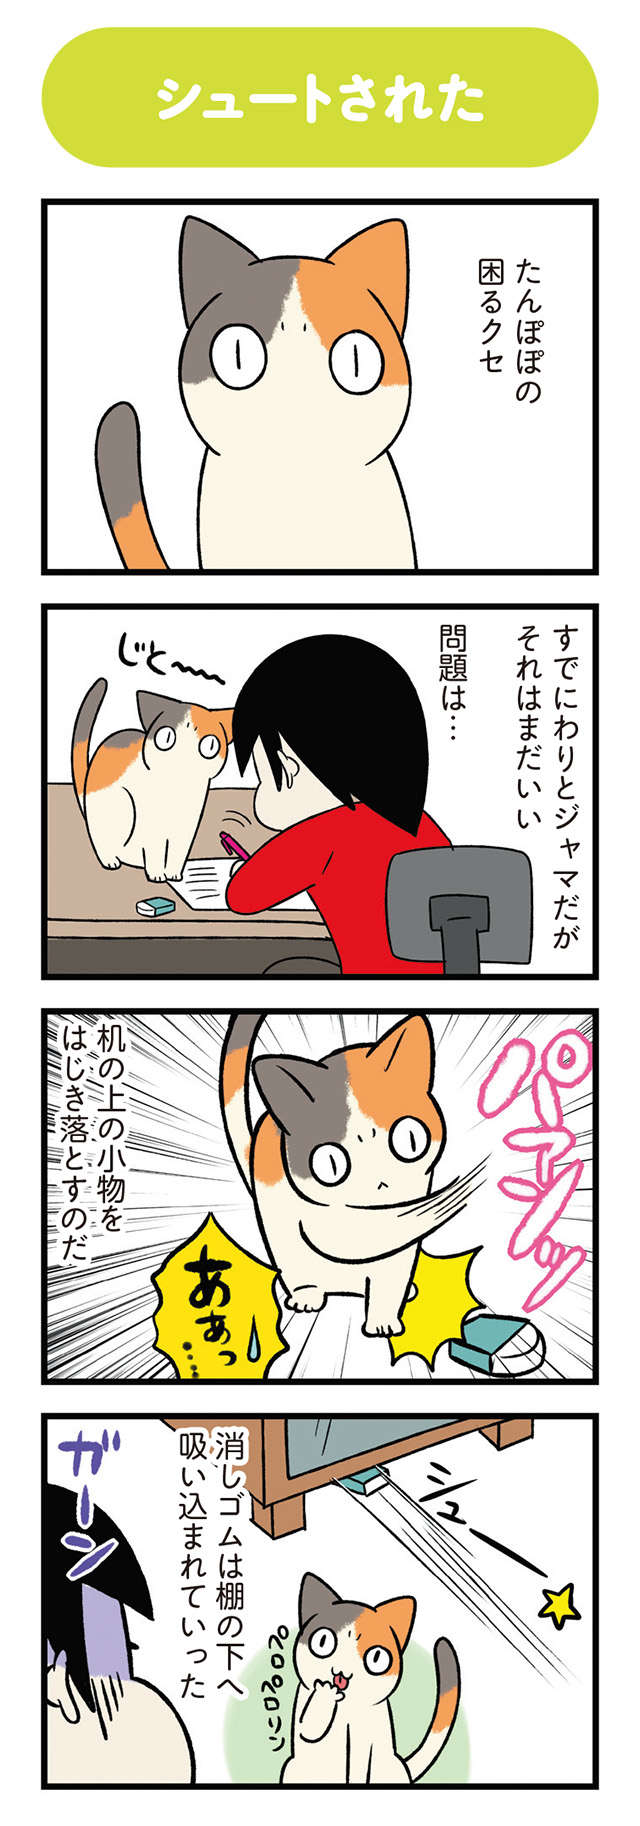 愛猫が机の上の小物をすべてはじき落とす。その困ったクセはなんのため...？／うちう猫と柴犬 13.jpg